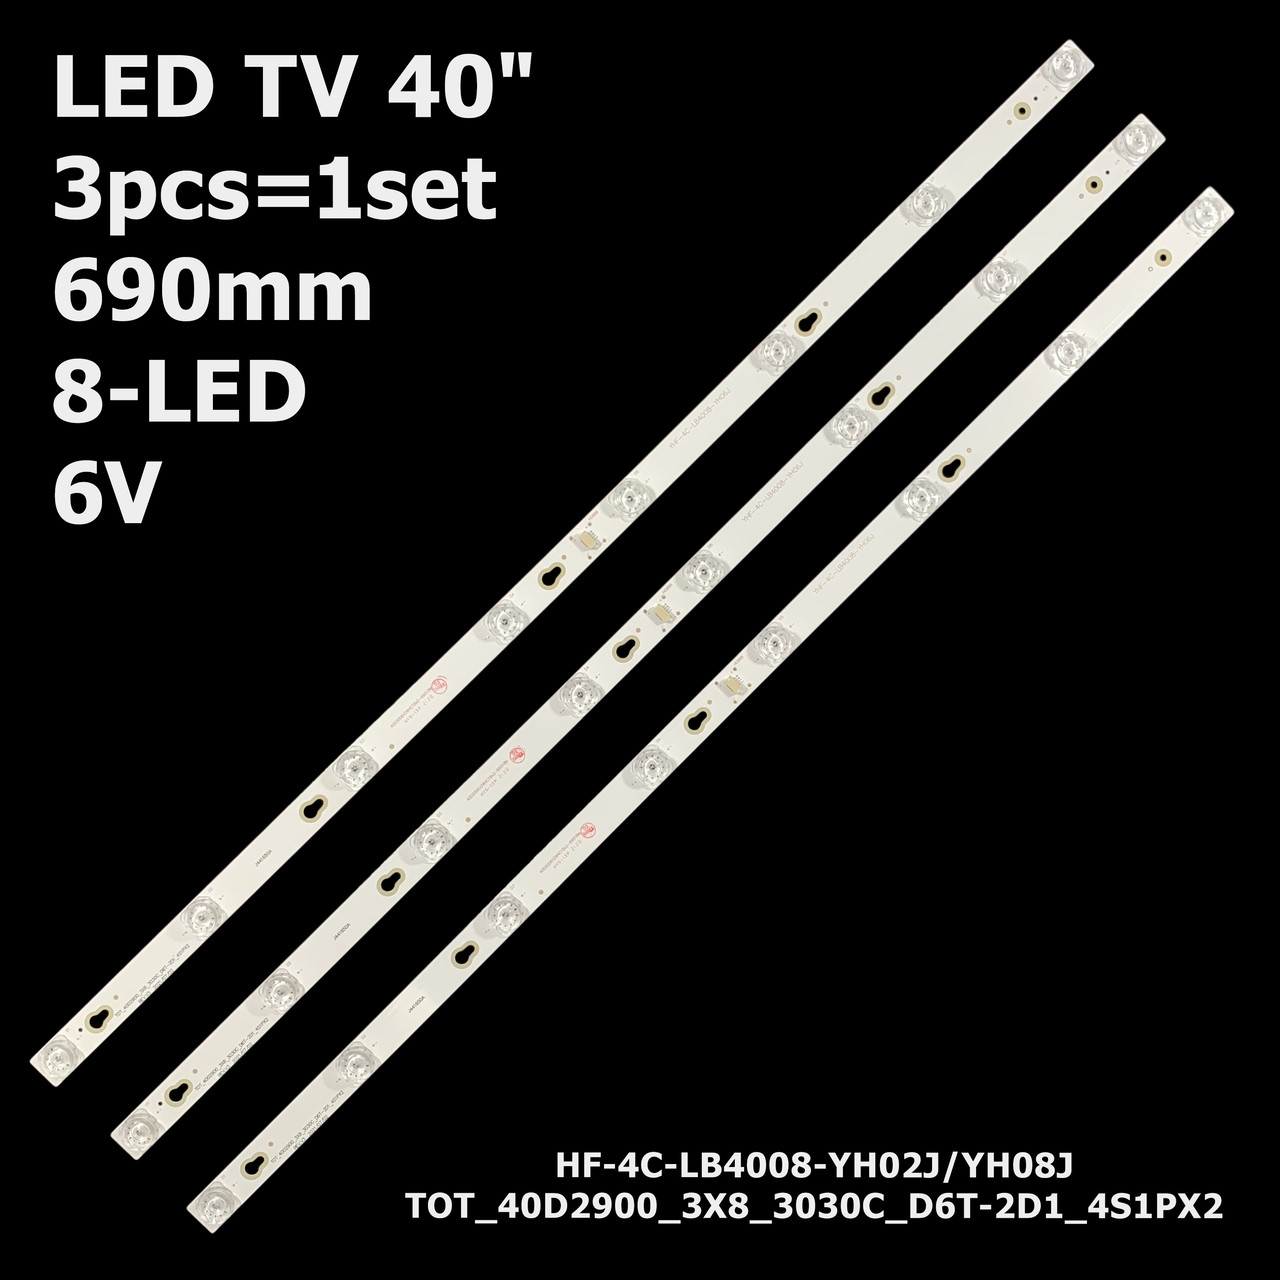 LED підсвітка TV 40" 690mm YHF-4C-LB4008-YH02J/YH08J/HR2/HR3/YH02 40HR330M08A2 TOT-40D2900-3X8-3030C 3шт.